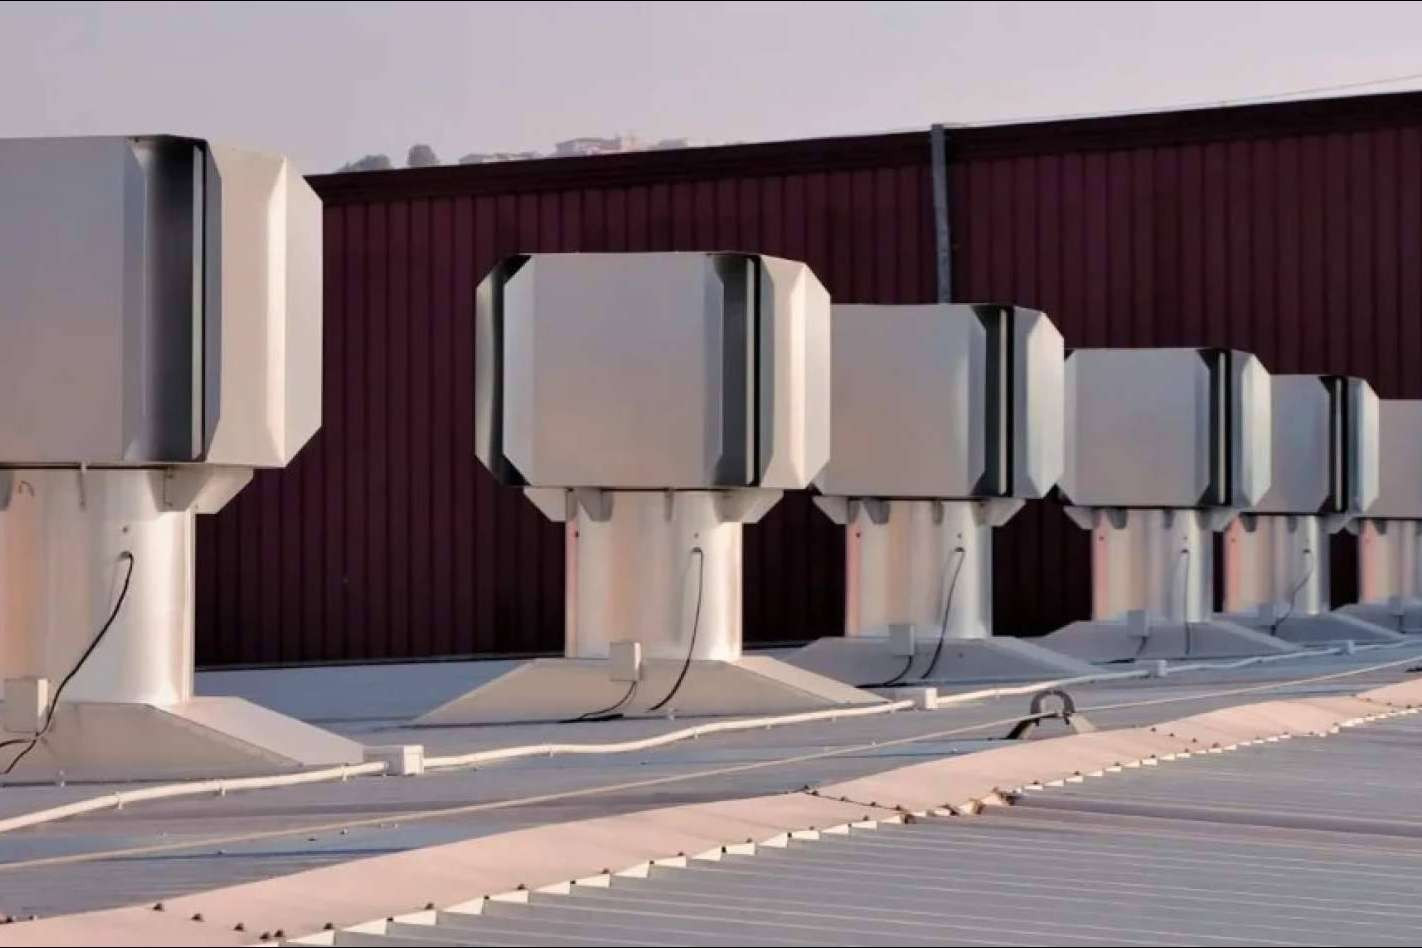  Las soluciones de ventilación industrial de Atosdin aportan seguridad y salud a las empresas 